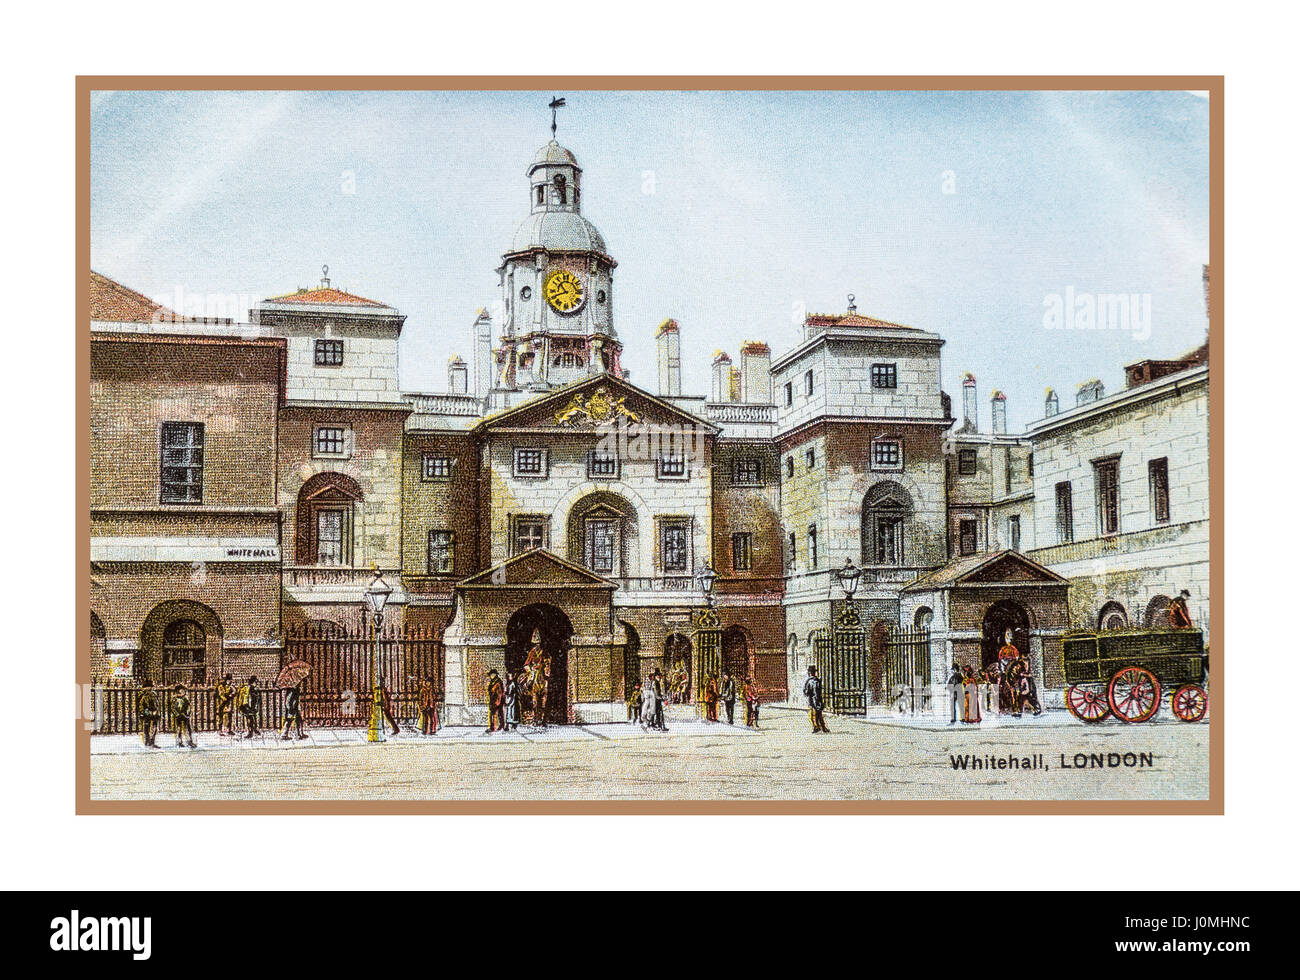 Vintage 1900's historique carte postale voyage illustration aquarelle de Whitehall London UK Horseguards Banque D'Images